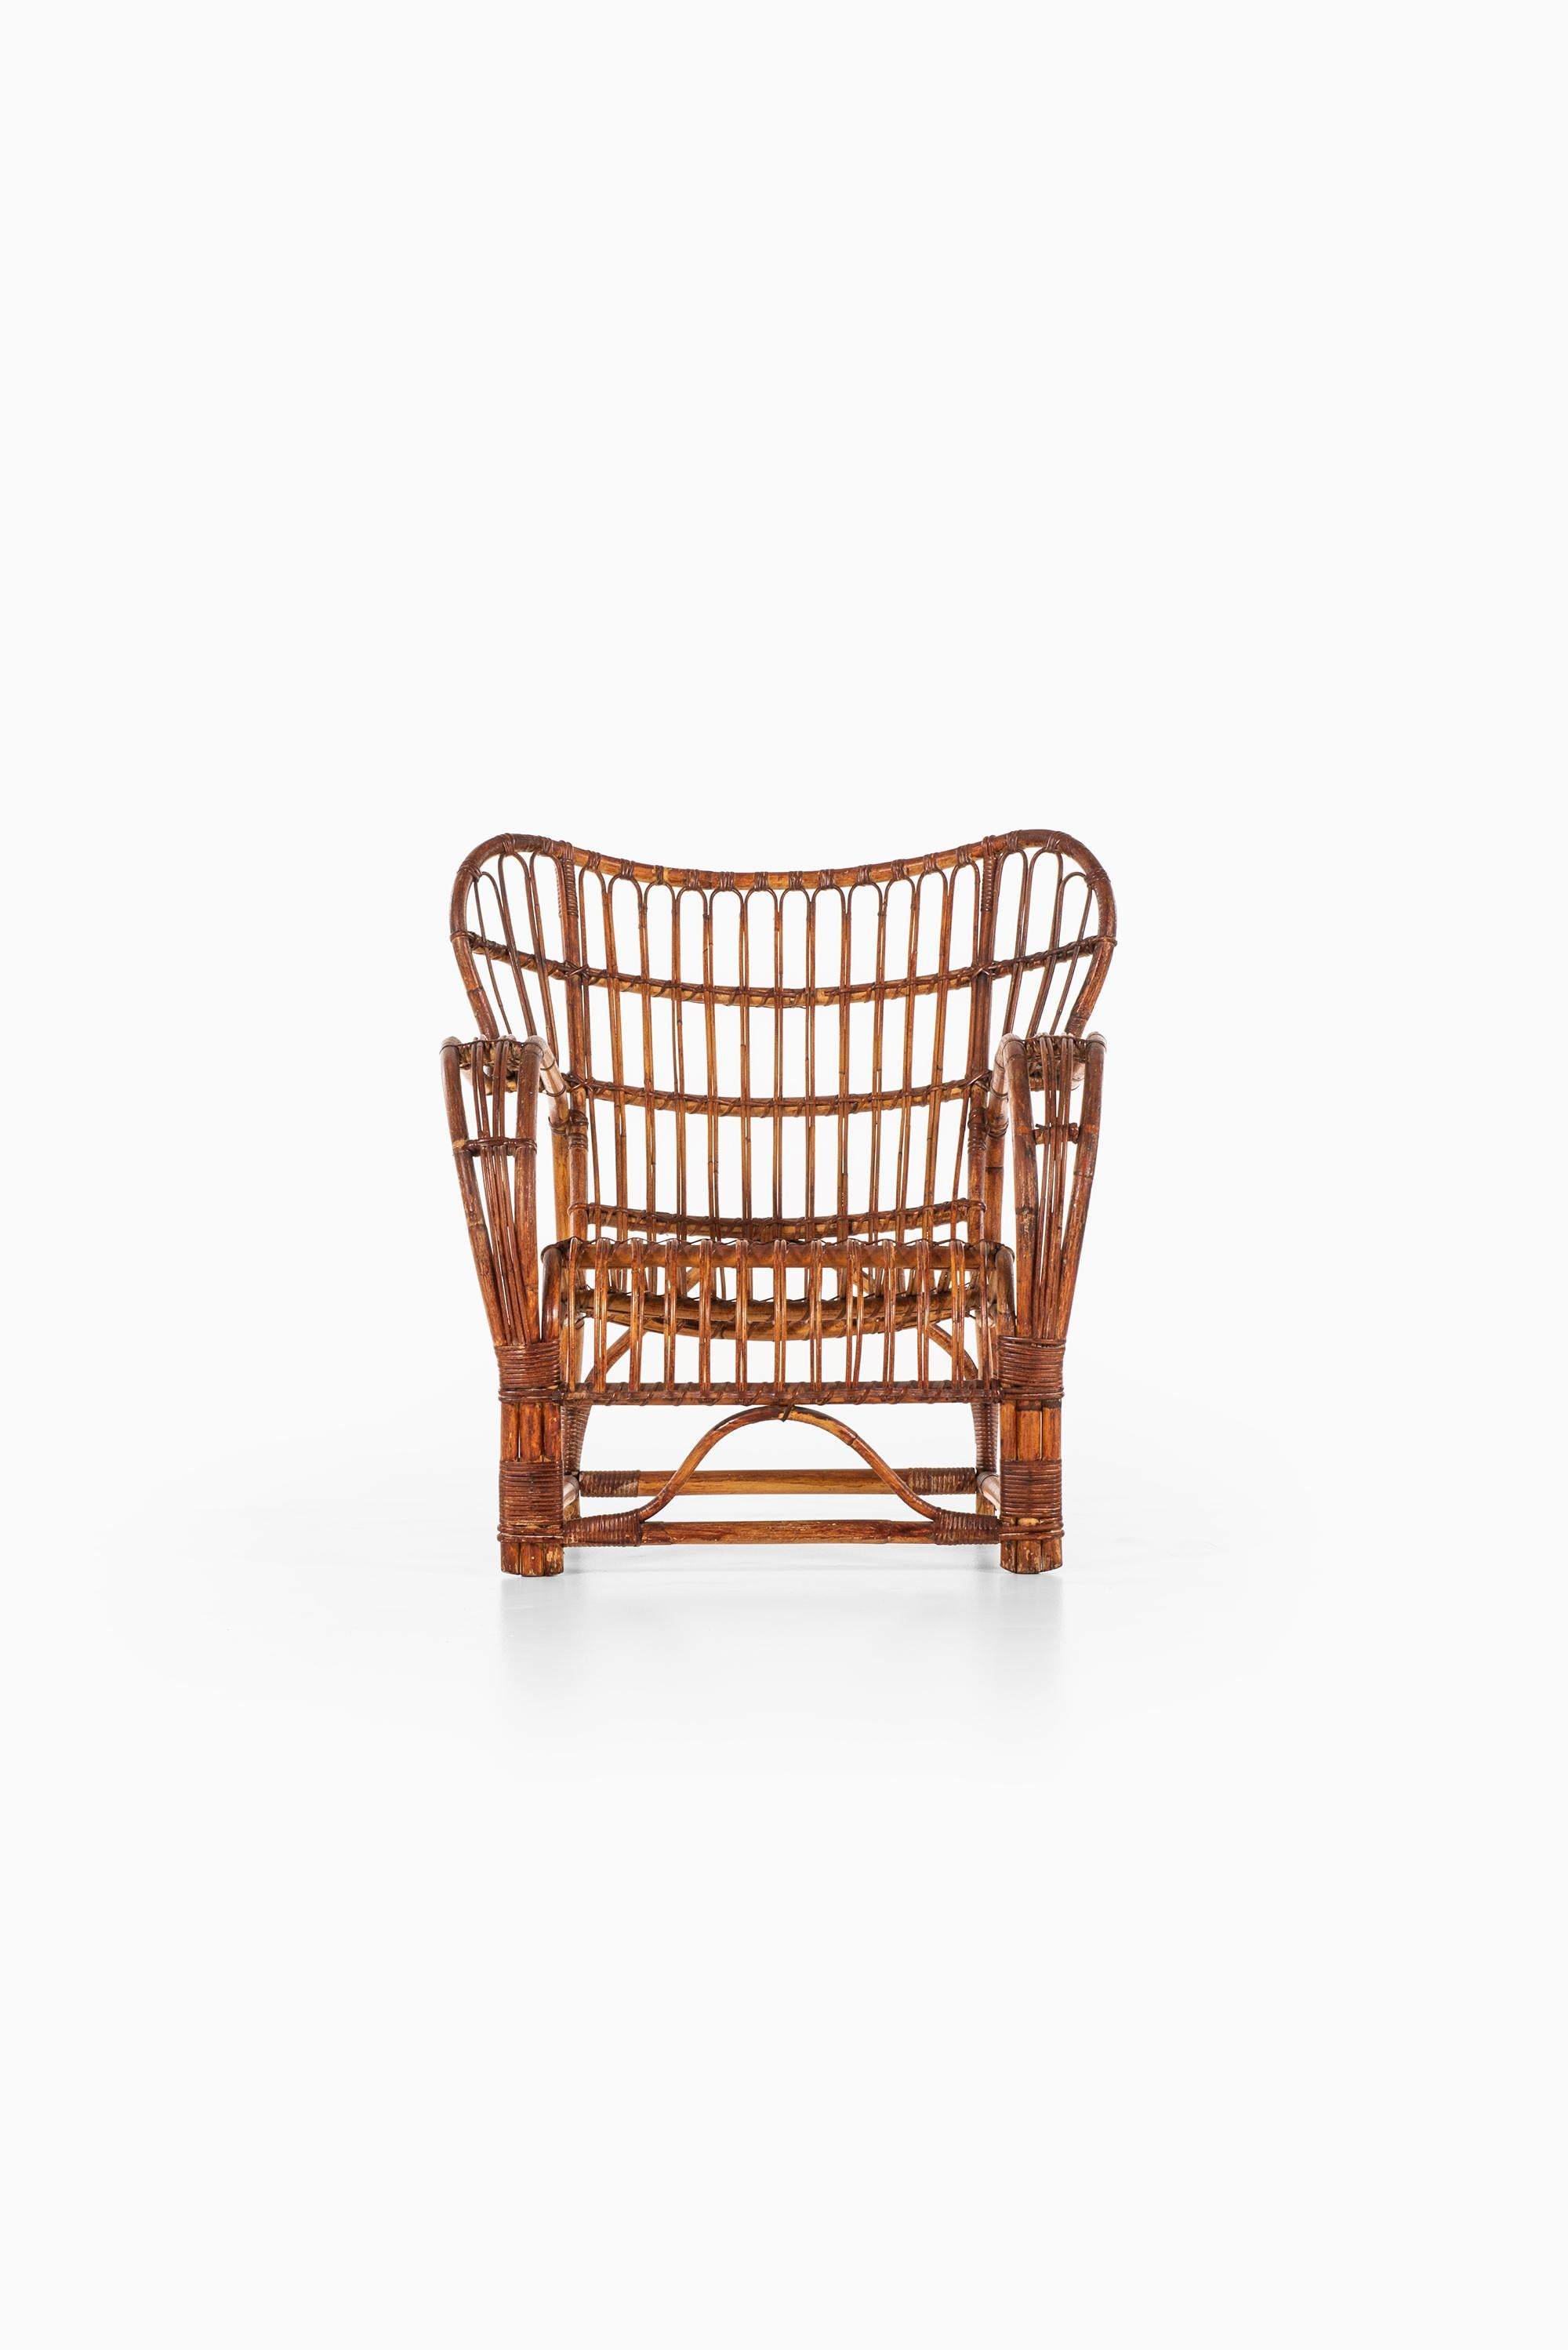 Rare easy chair designed by Viggo Boesen. Produced by E.V.A. Nissen & Co in Denmark.